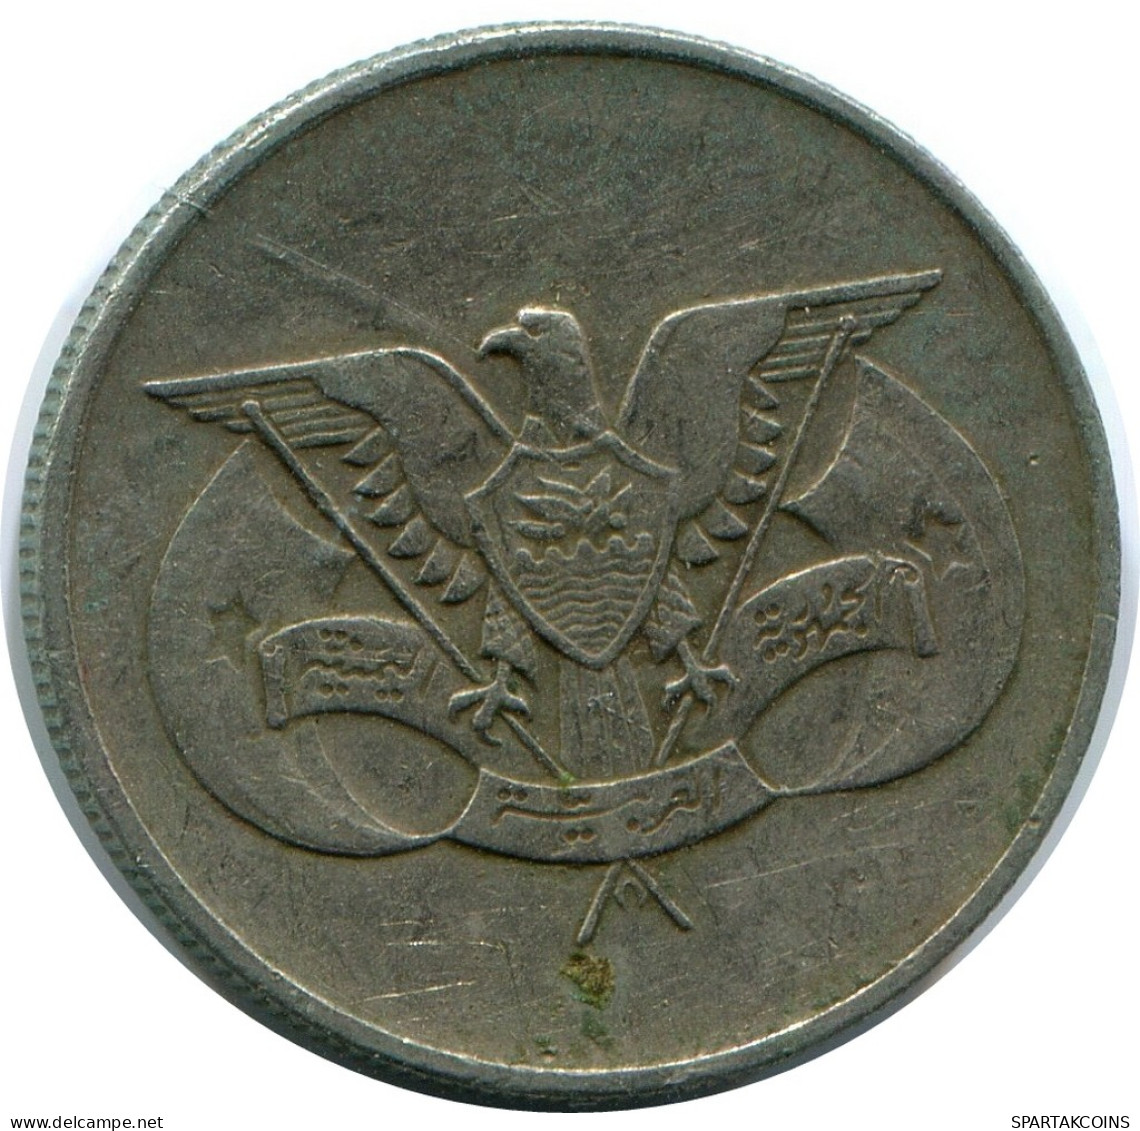 25 FILS 1979 YEMEN Islamic Coin #AP483.U - Yemen